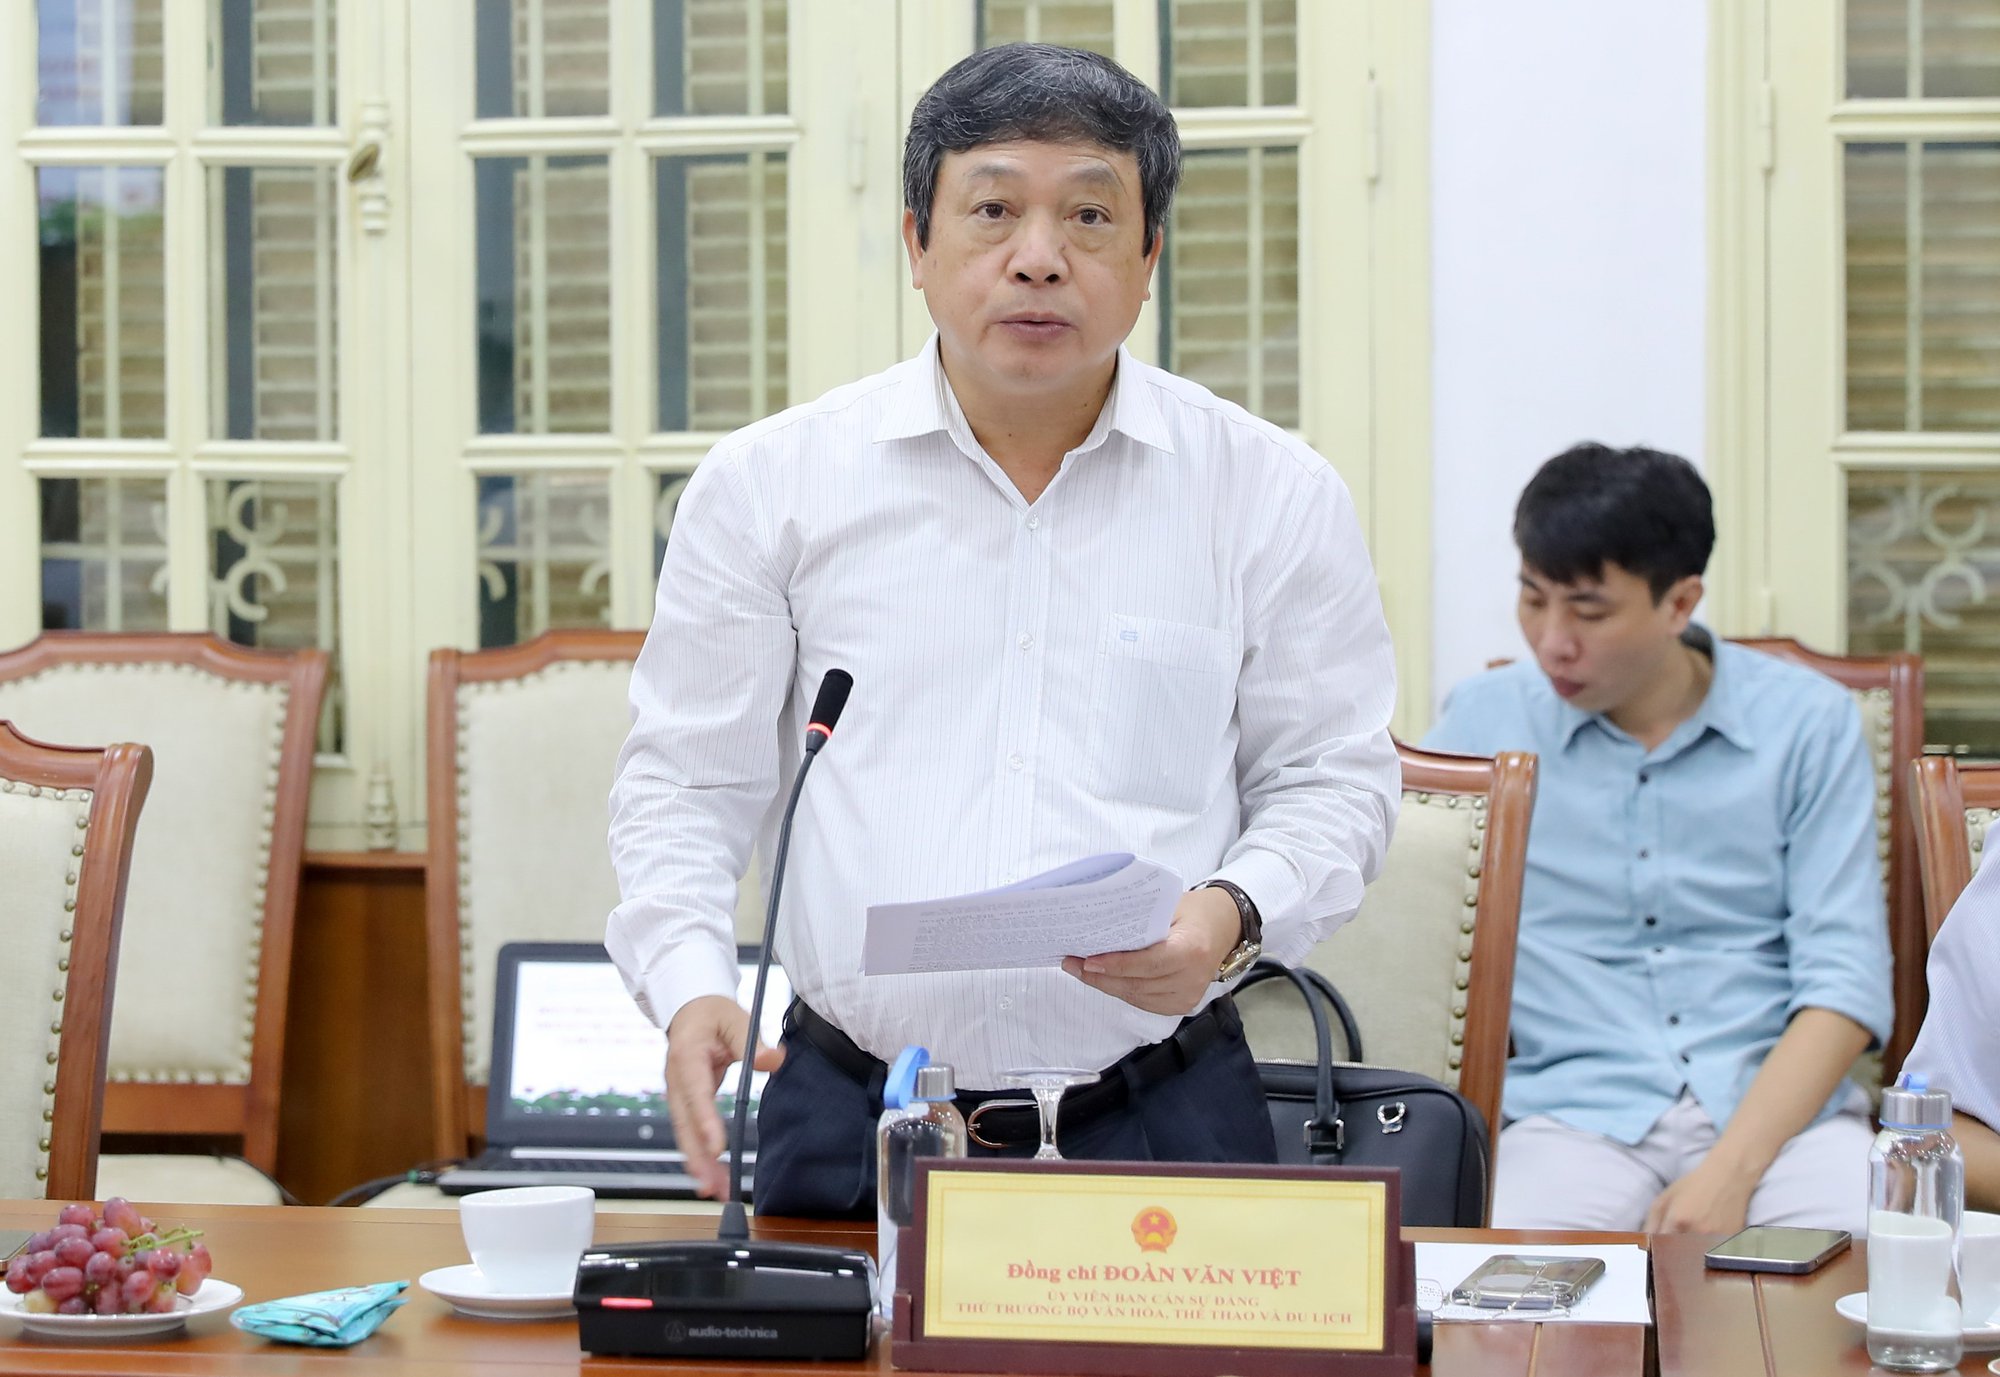 Bộ trưởng Nguyễn Văn Hùng: Xây dựng văn hóa doanh nghiệp trên hai trụ cột chính là chấp hành quy định pháp luật và trách nhiệm với xã hội - Ảnh 3.